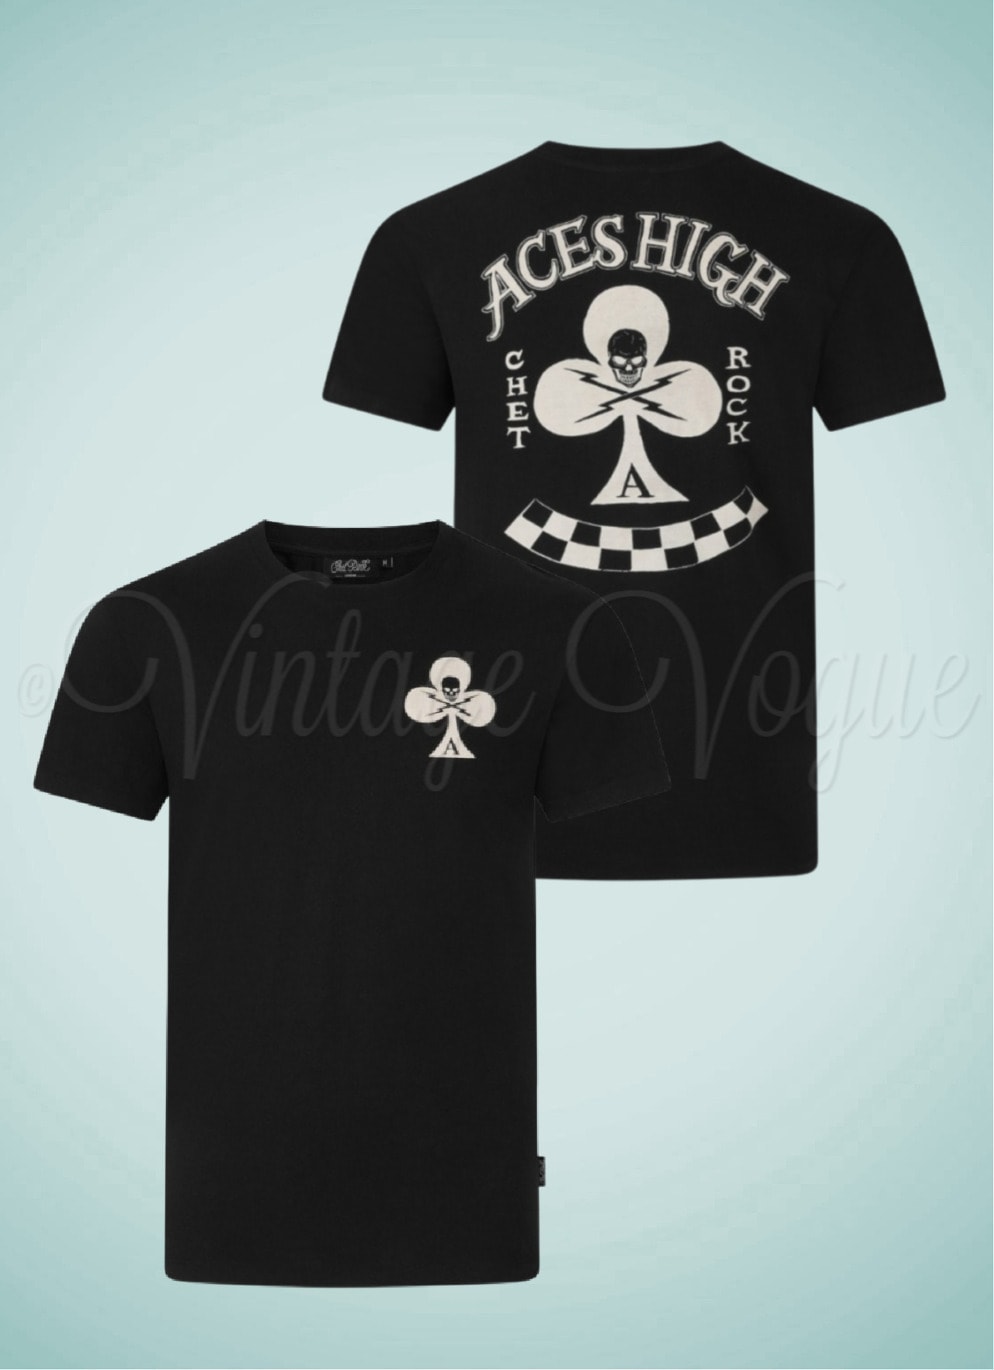 Chet Rock 50er Jahre Retro Rockabilly Herren T-Shirt Aces High in Schwarz